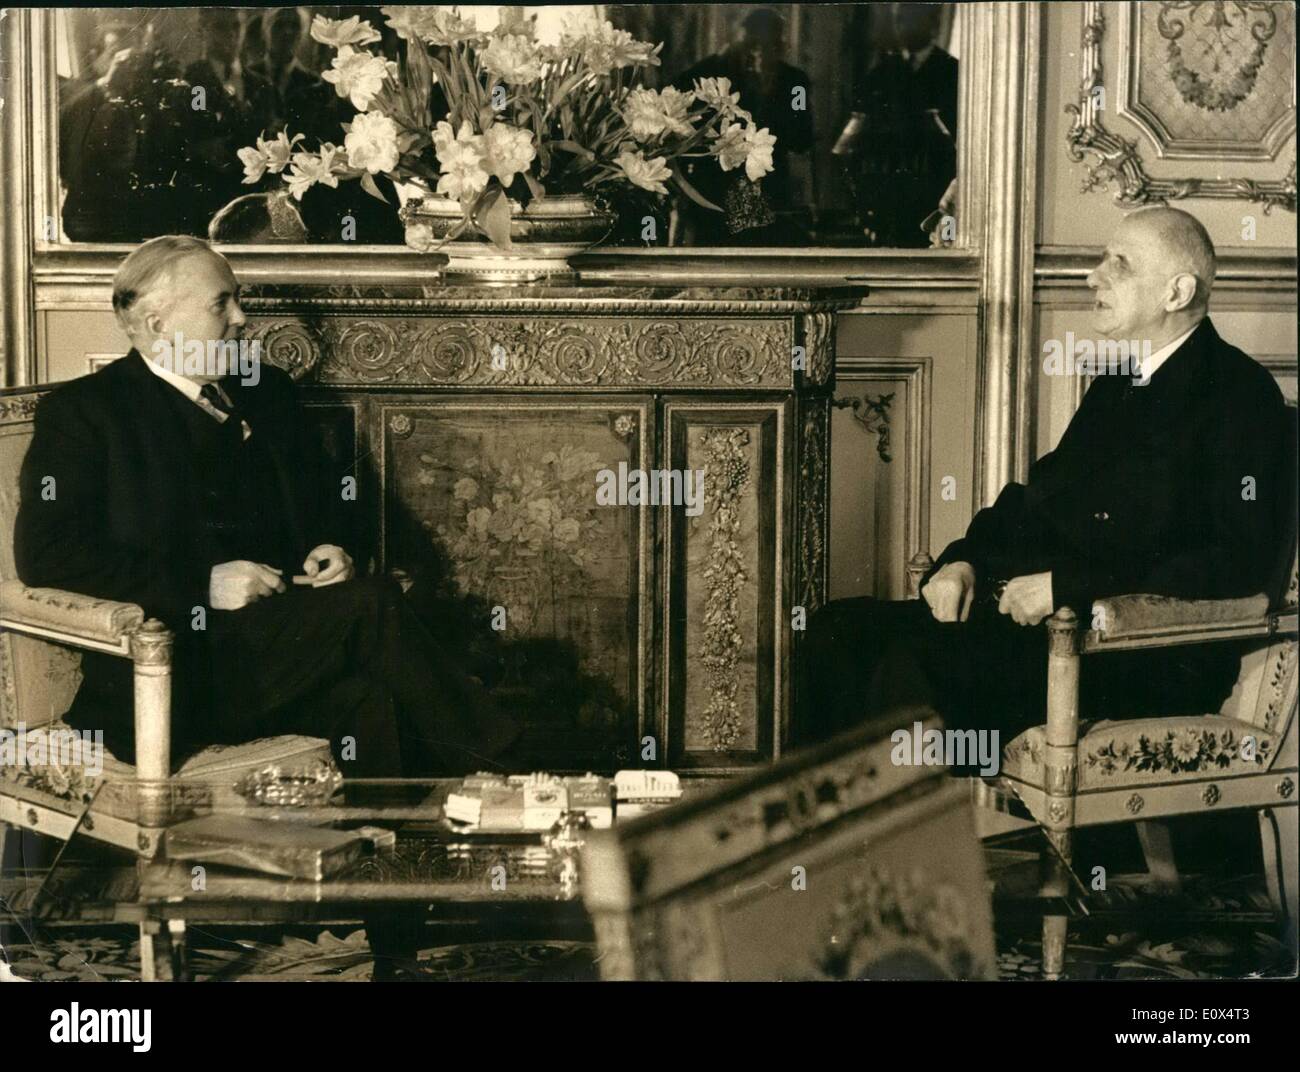 Avril 04, 1965 - Harold Wilson en visite officielle à Paris. Photo montre Harold Wilson en photo avec le Général de Gaulle au cours de leurs entretiens à l'Elysée à aujourd'hui. Banque D'Images